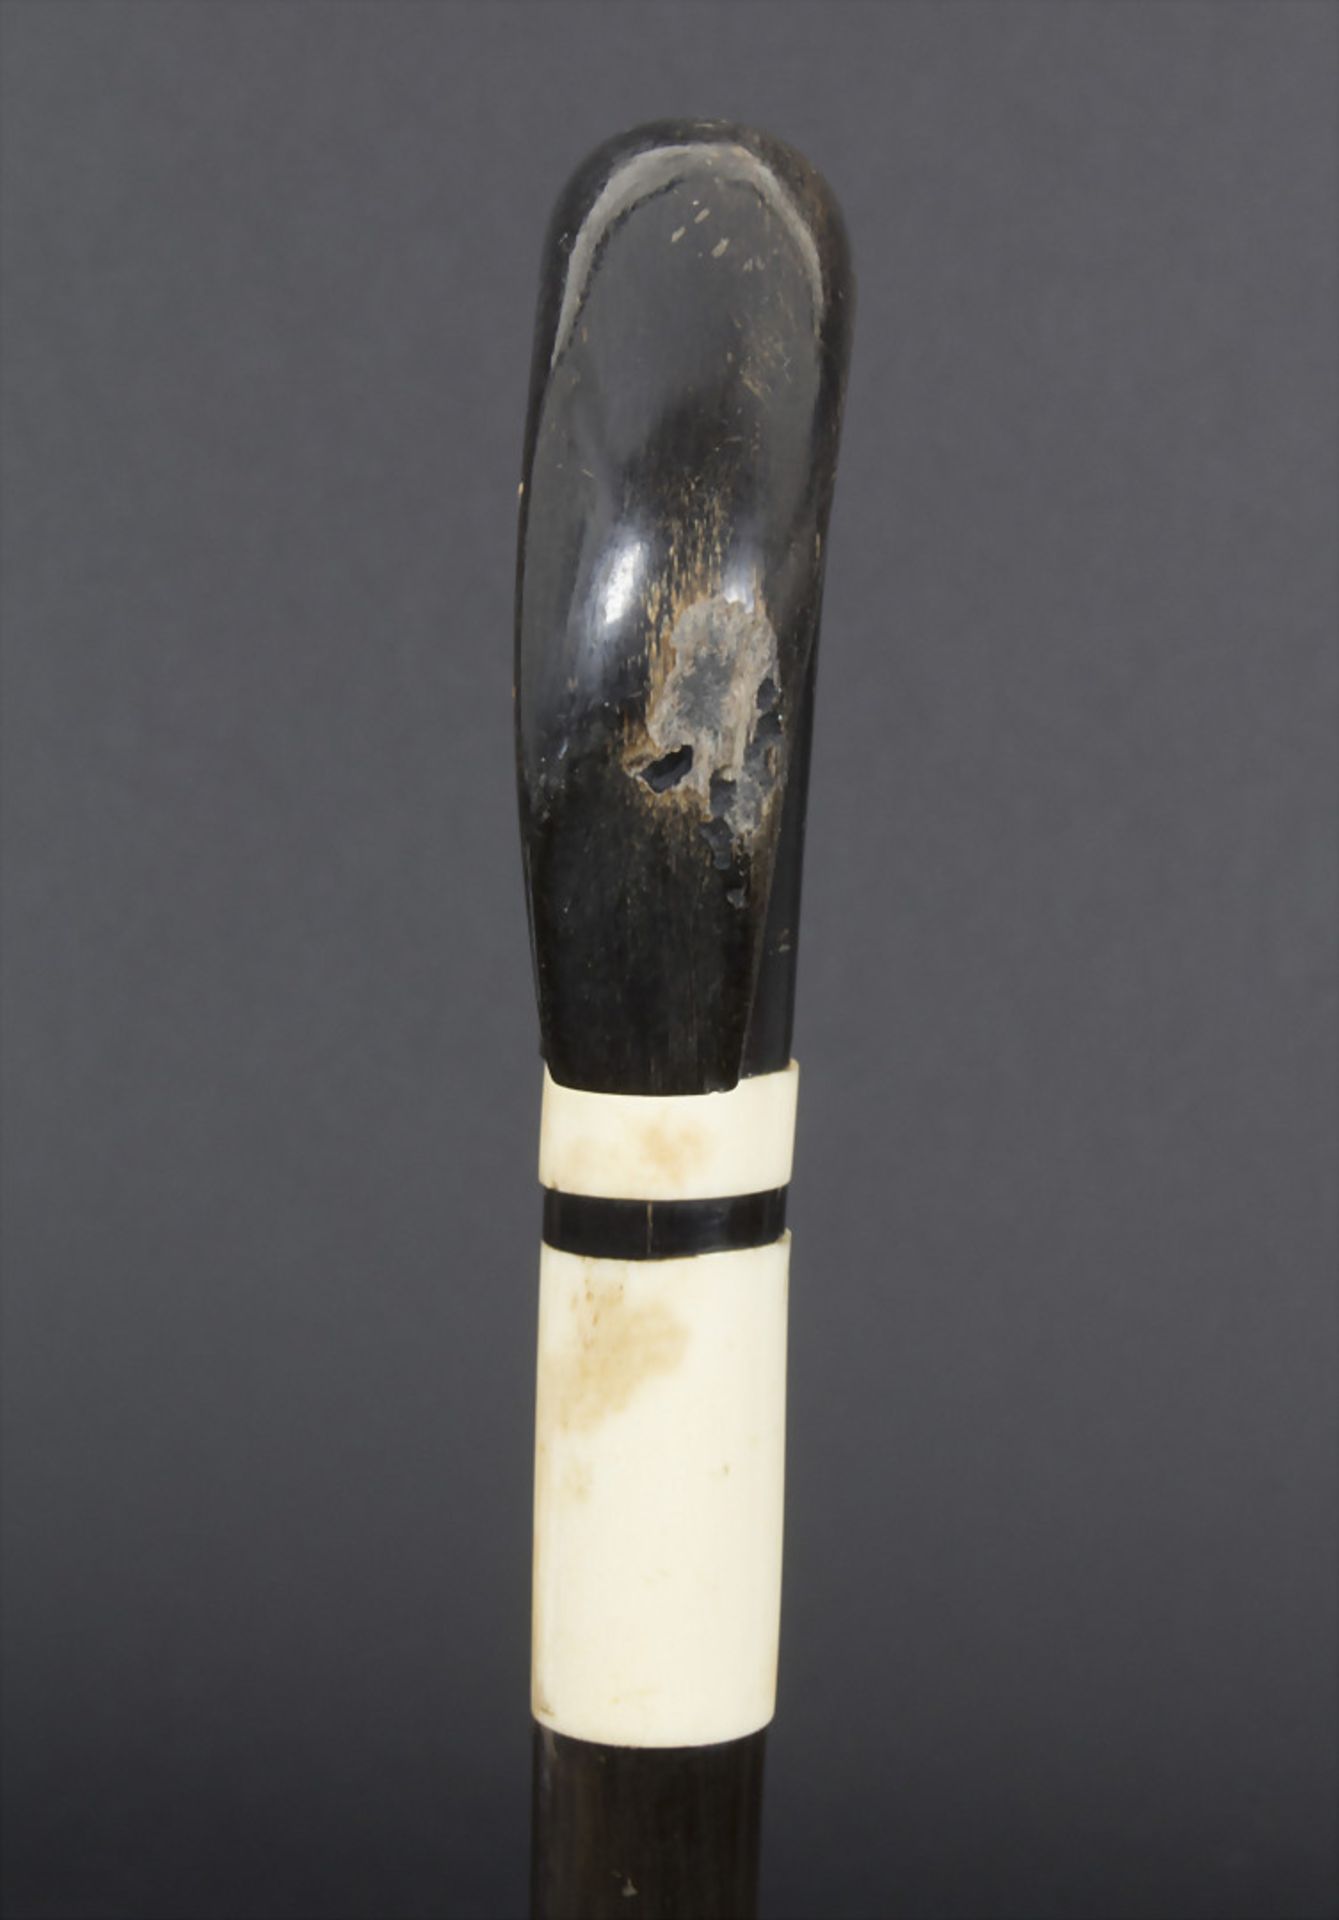 Gehstock mit Schwarz-Weiß-Dekor / A cane with black and white patterns, um 1900Material: Horn, - Bild 3 aus 5